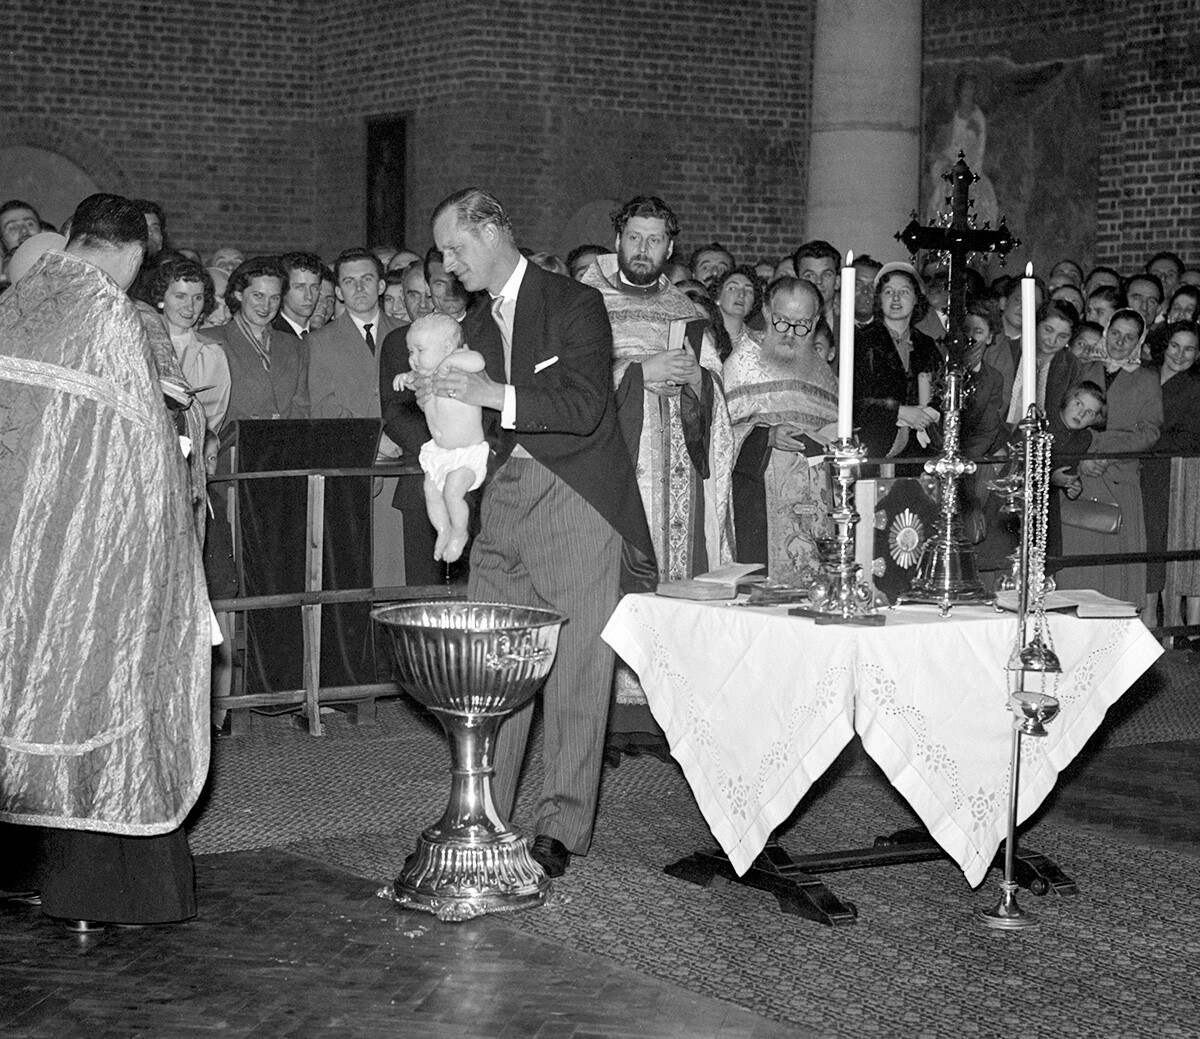 Le duc d'Édimbourg, qui est le parrain de l'enfant, soulève la petite princesse Maria («Tania») des fonts baptismaux après son baptême à l'église orthodoxe serbe. Le bébé est la fille de la nièce du duc, la princesse Christine de Hesse-Cassel, et du prince André de Yougoslavie.